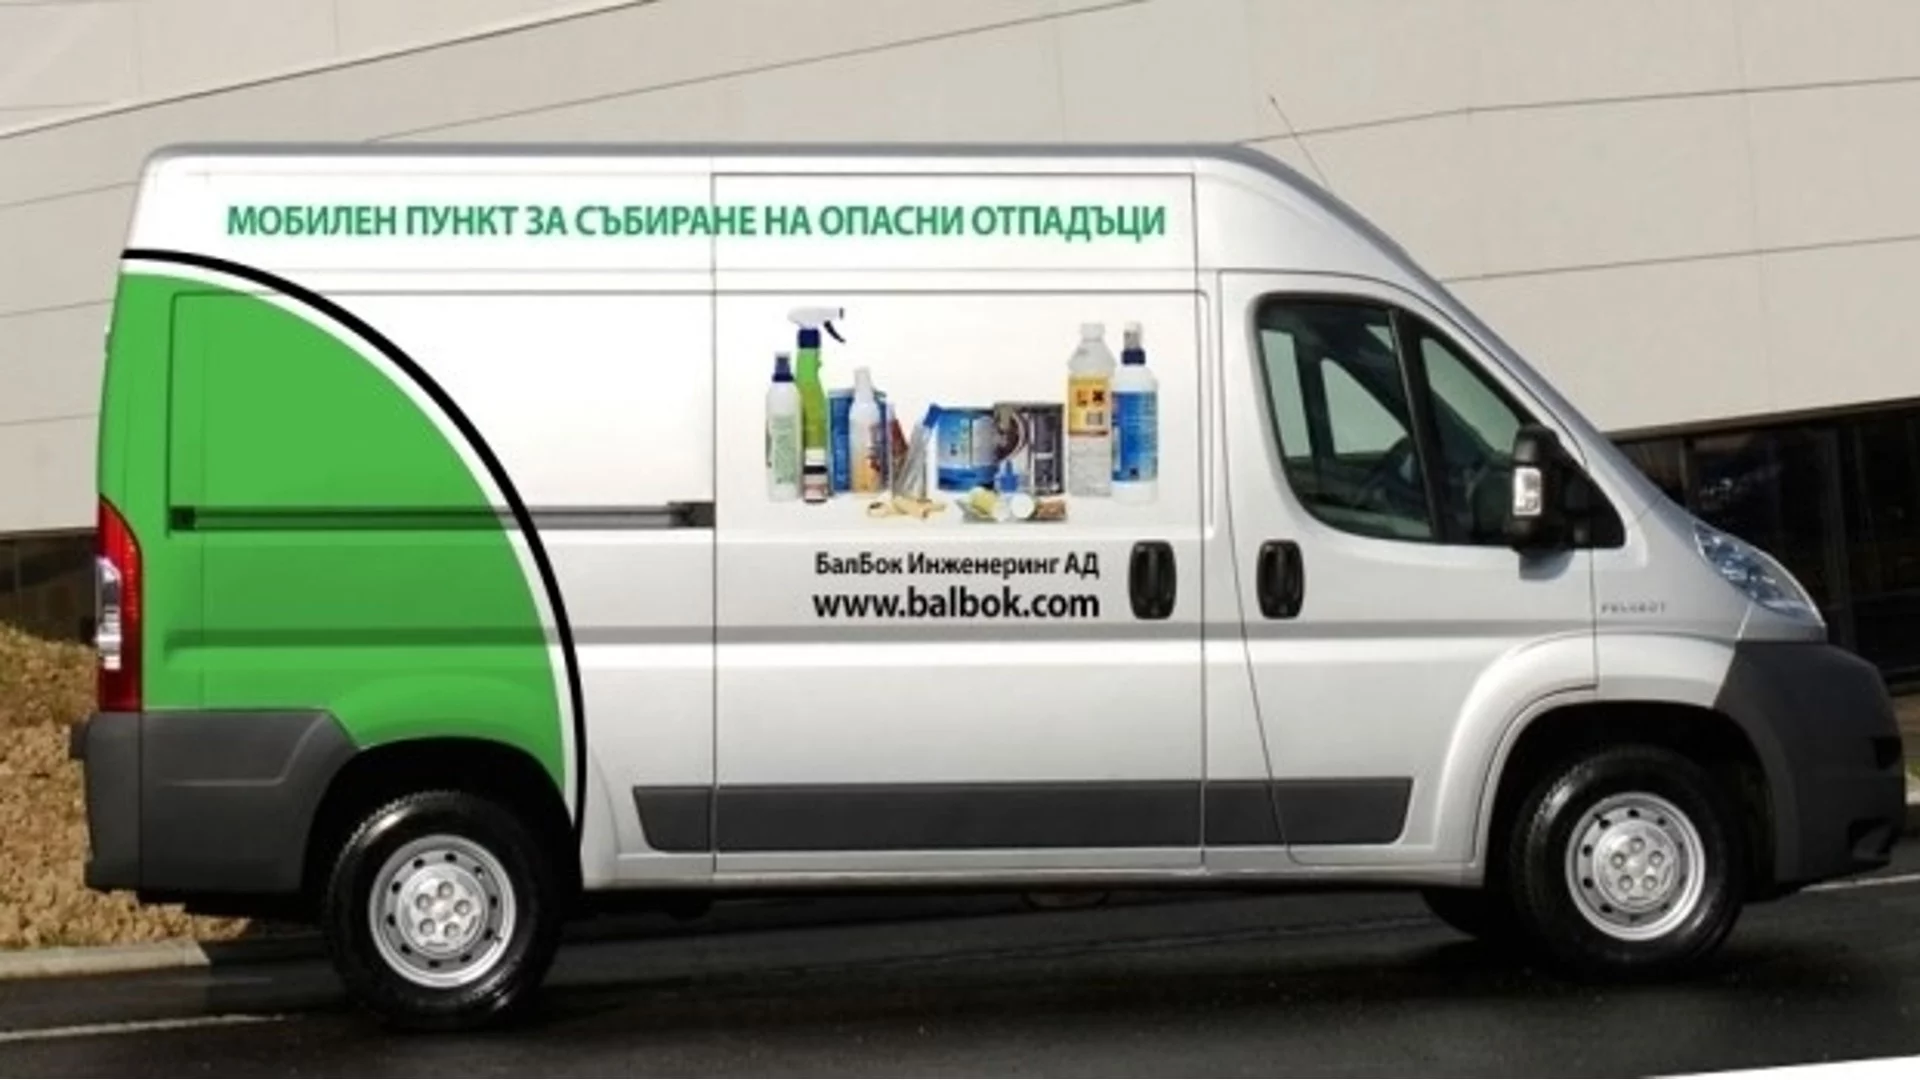 Община Пловдив с кампания за събиране на опасни отпадъци от домакинствата